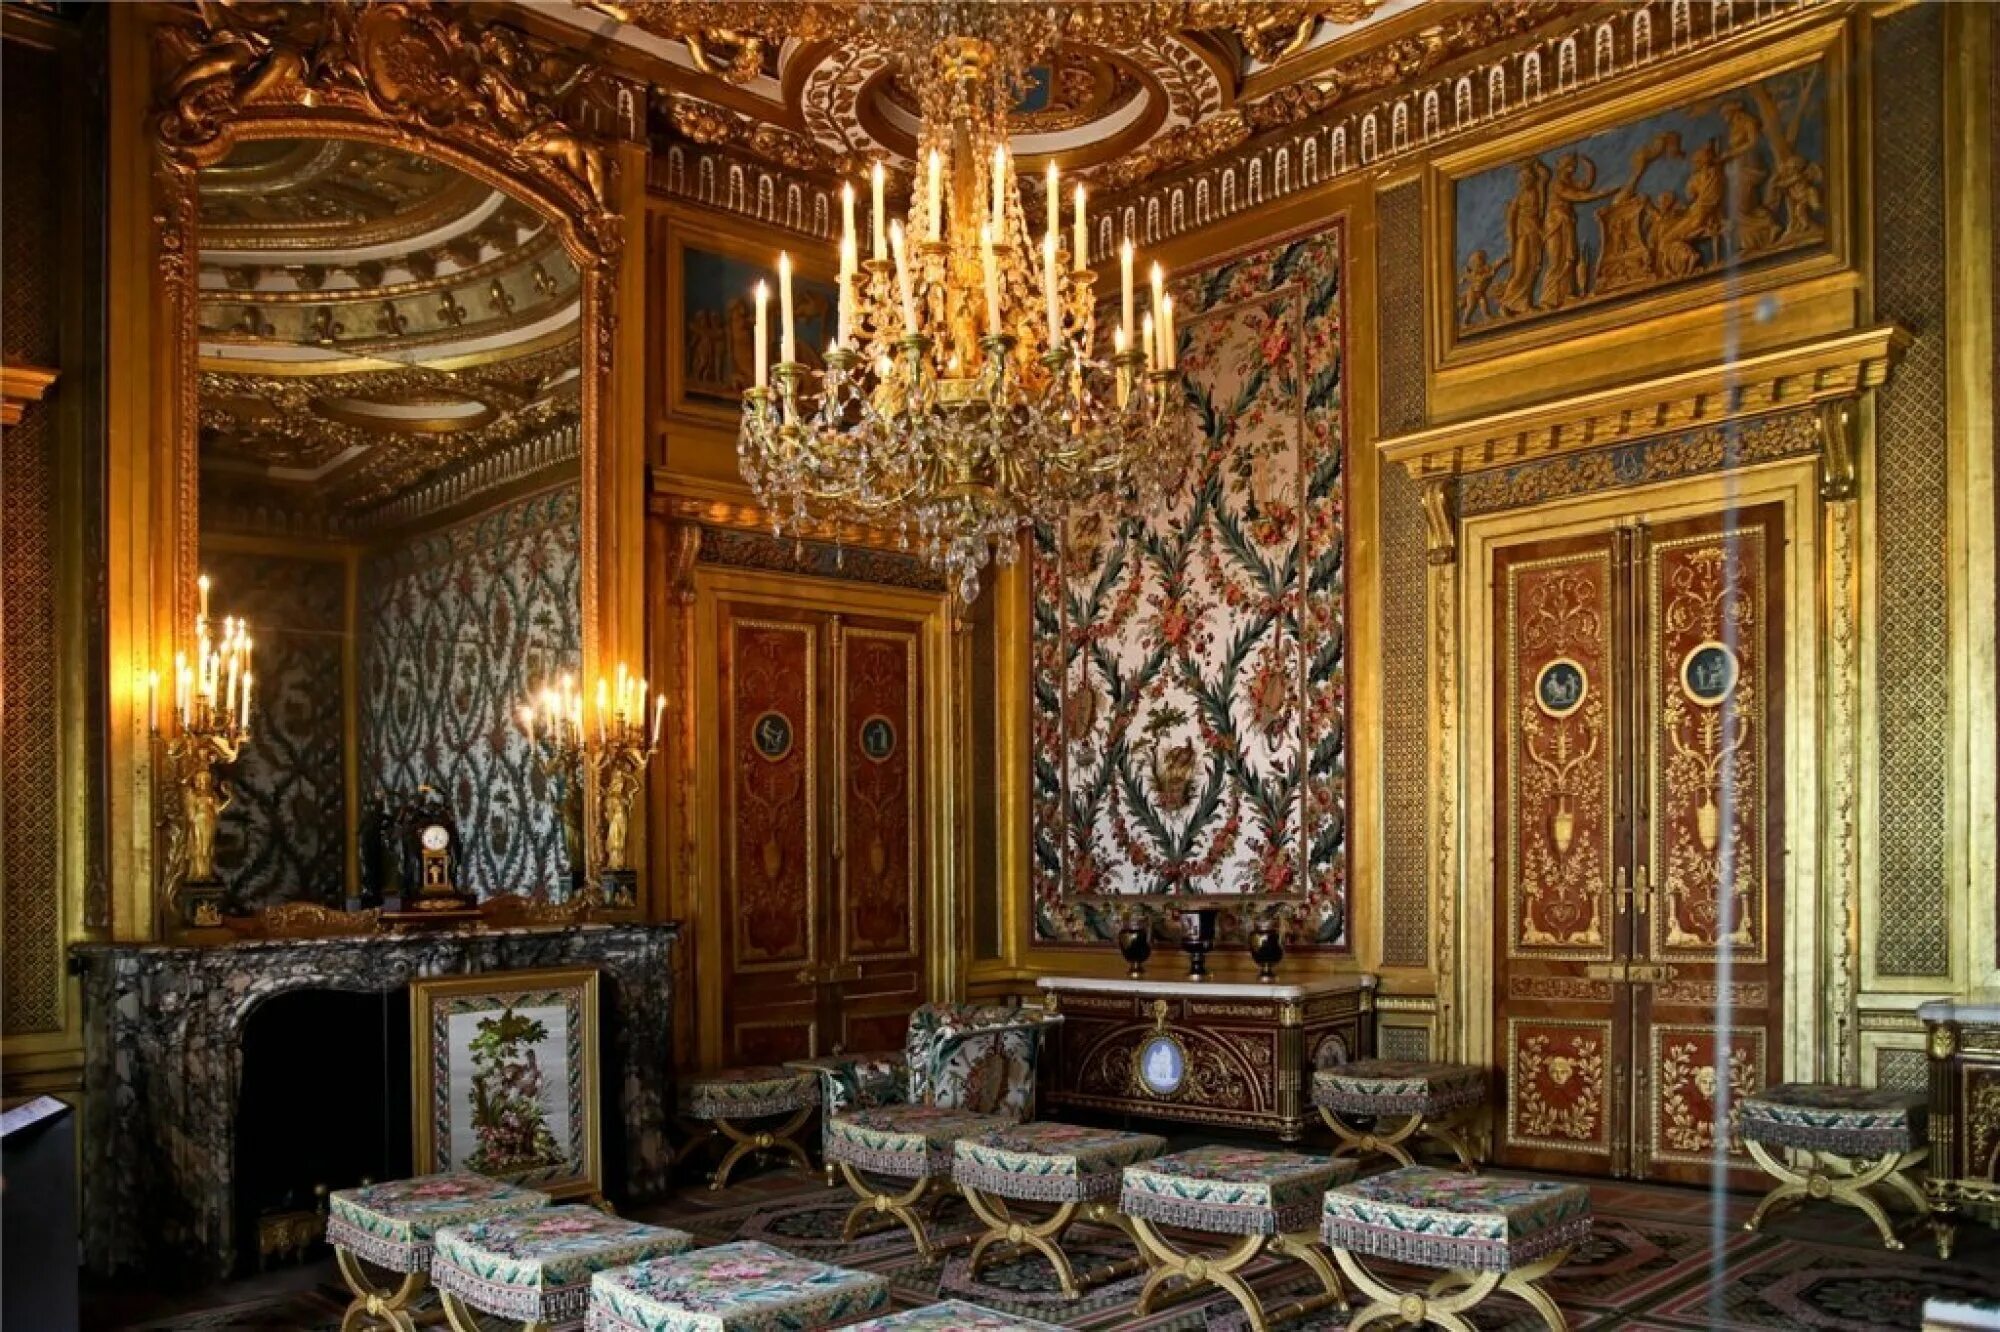 Ампир дворец Фонтенбло. Версальский дворец спальня короля. Спальня императора, дворец Фонтенбло. Версальский дворец рококо.